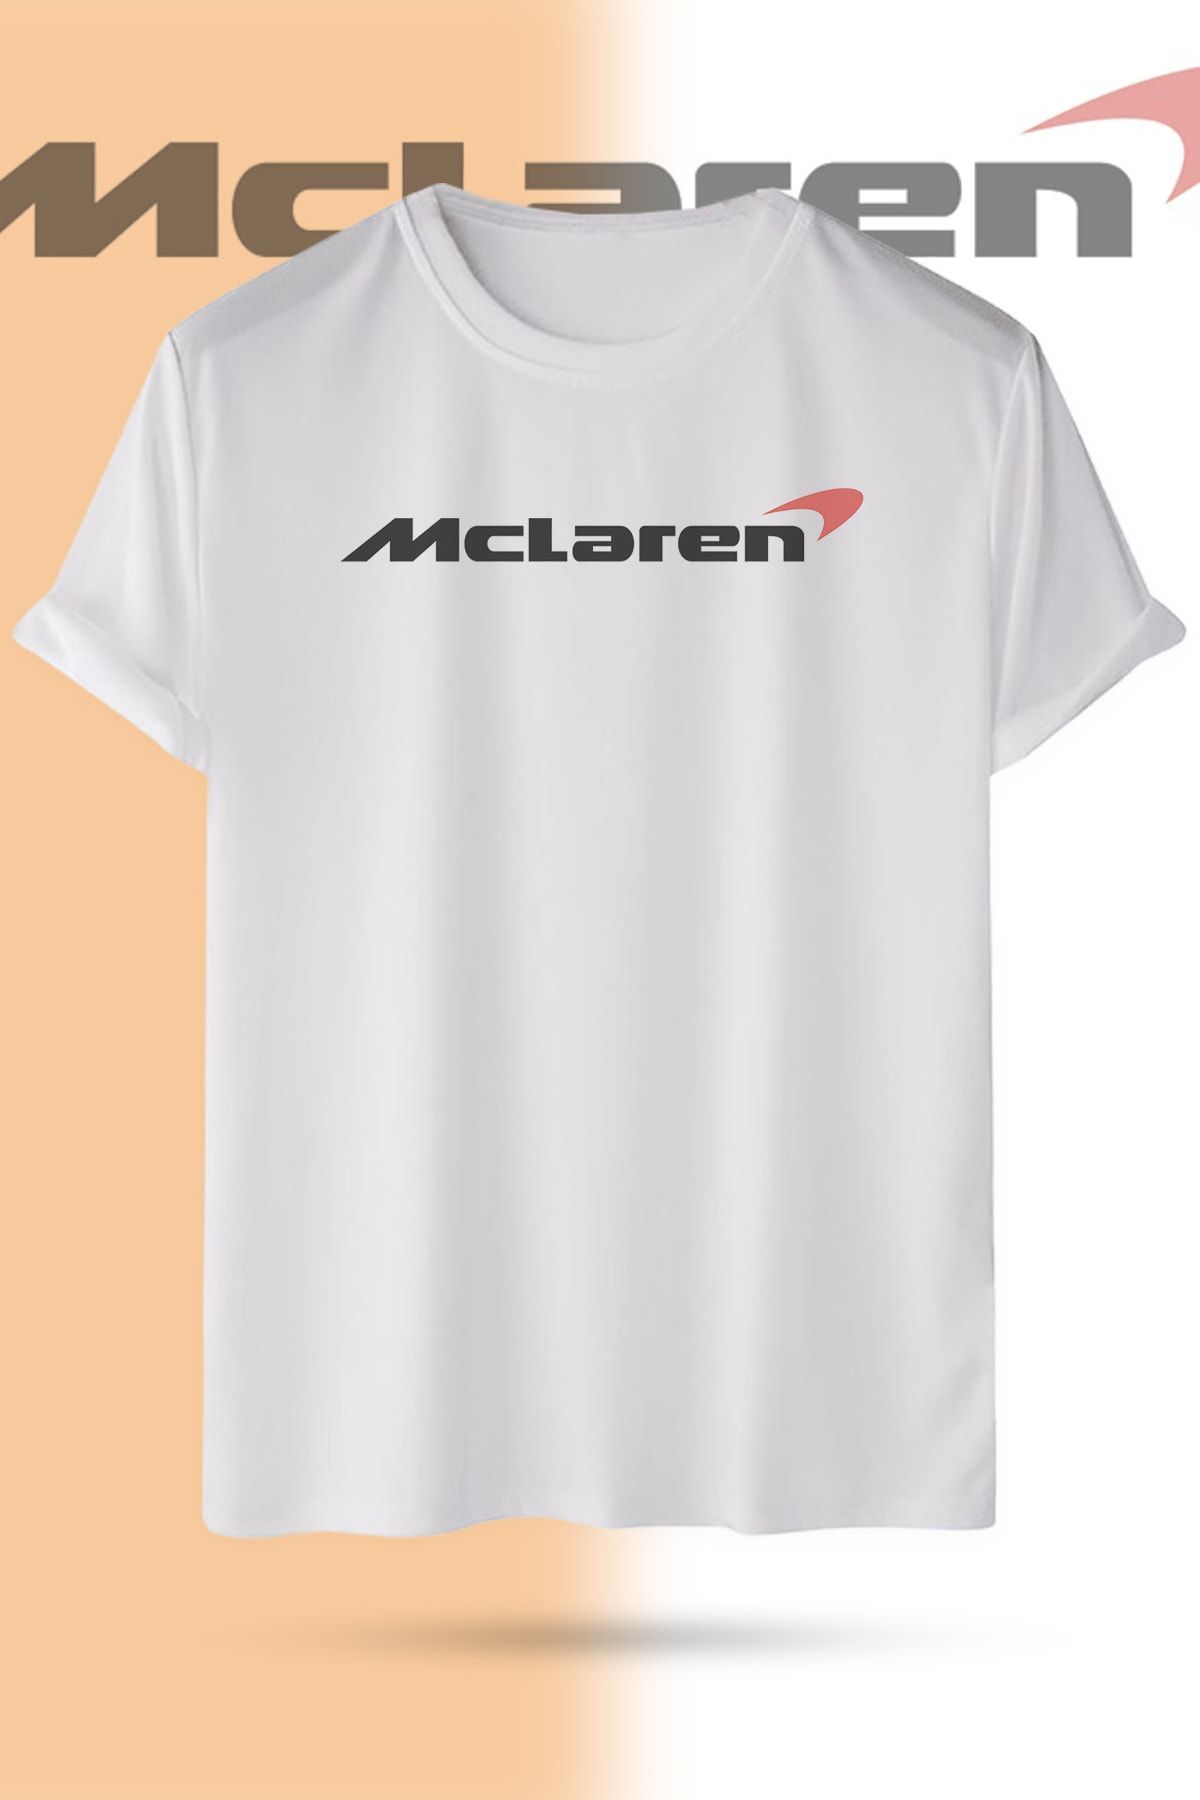 WebStyle Mclaren F1 Logo Pamuklu Bisiklet Yaka Baskılı Beyaz Kısa Kollu Unisex Tişört